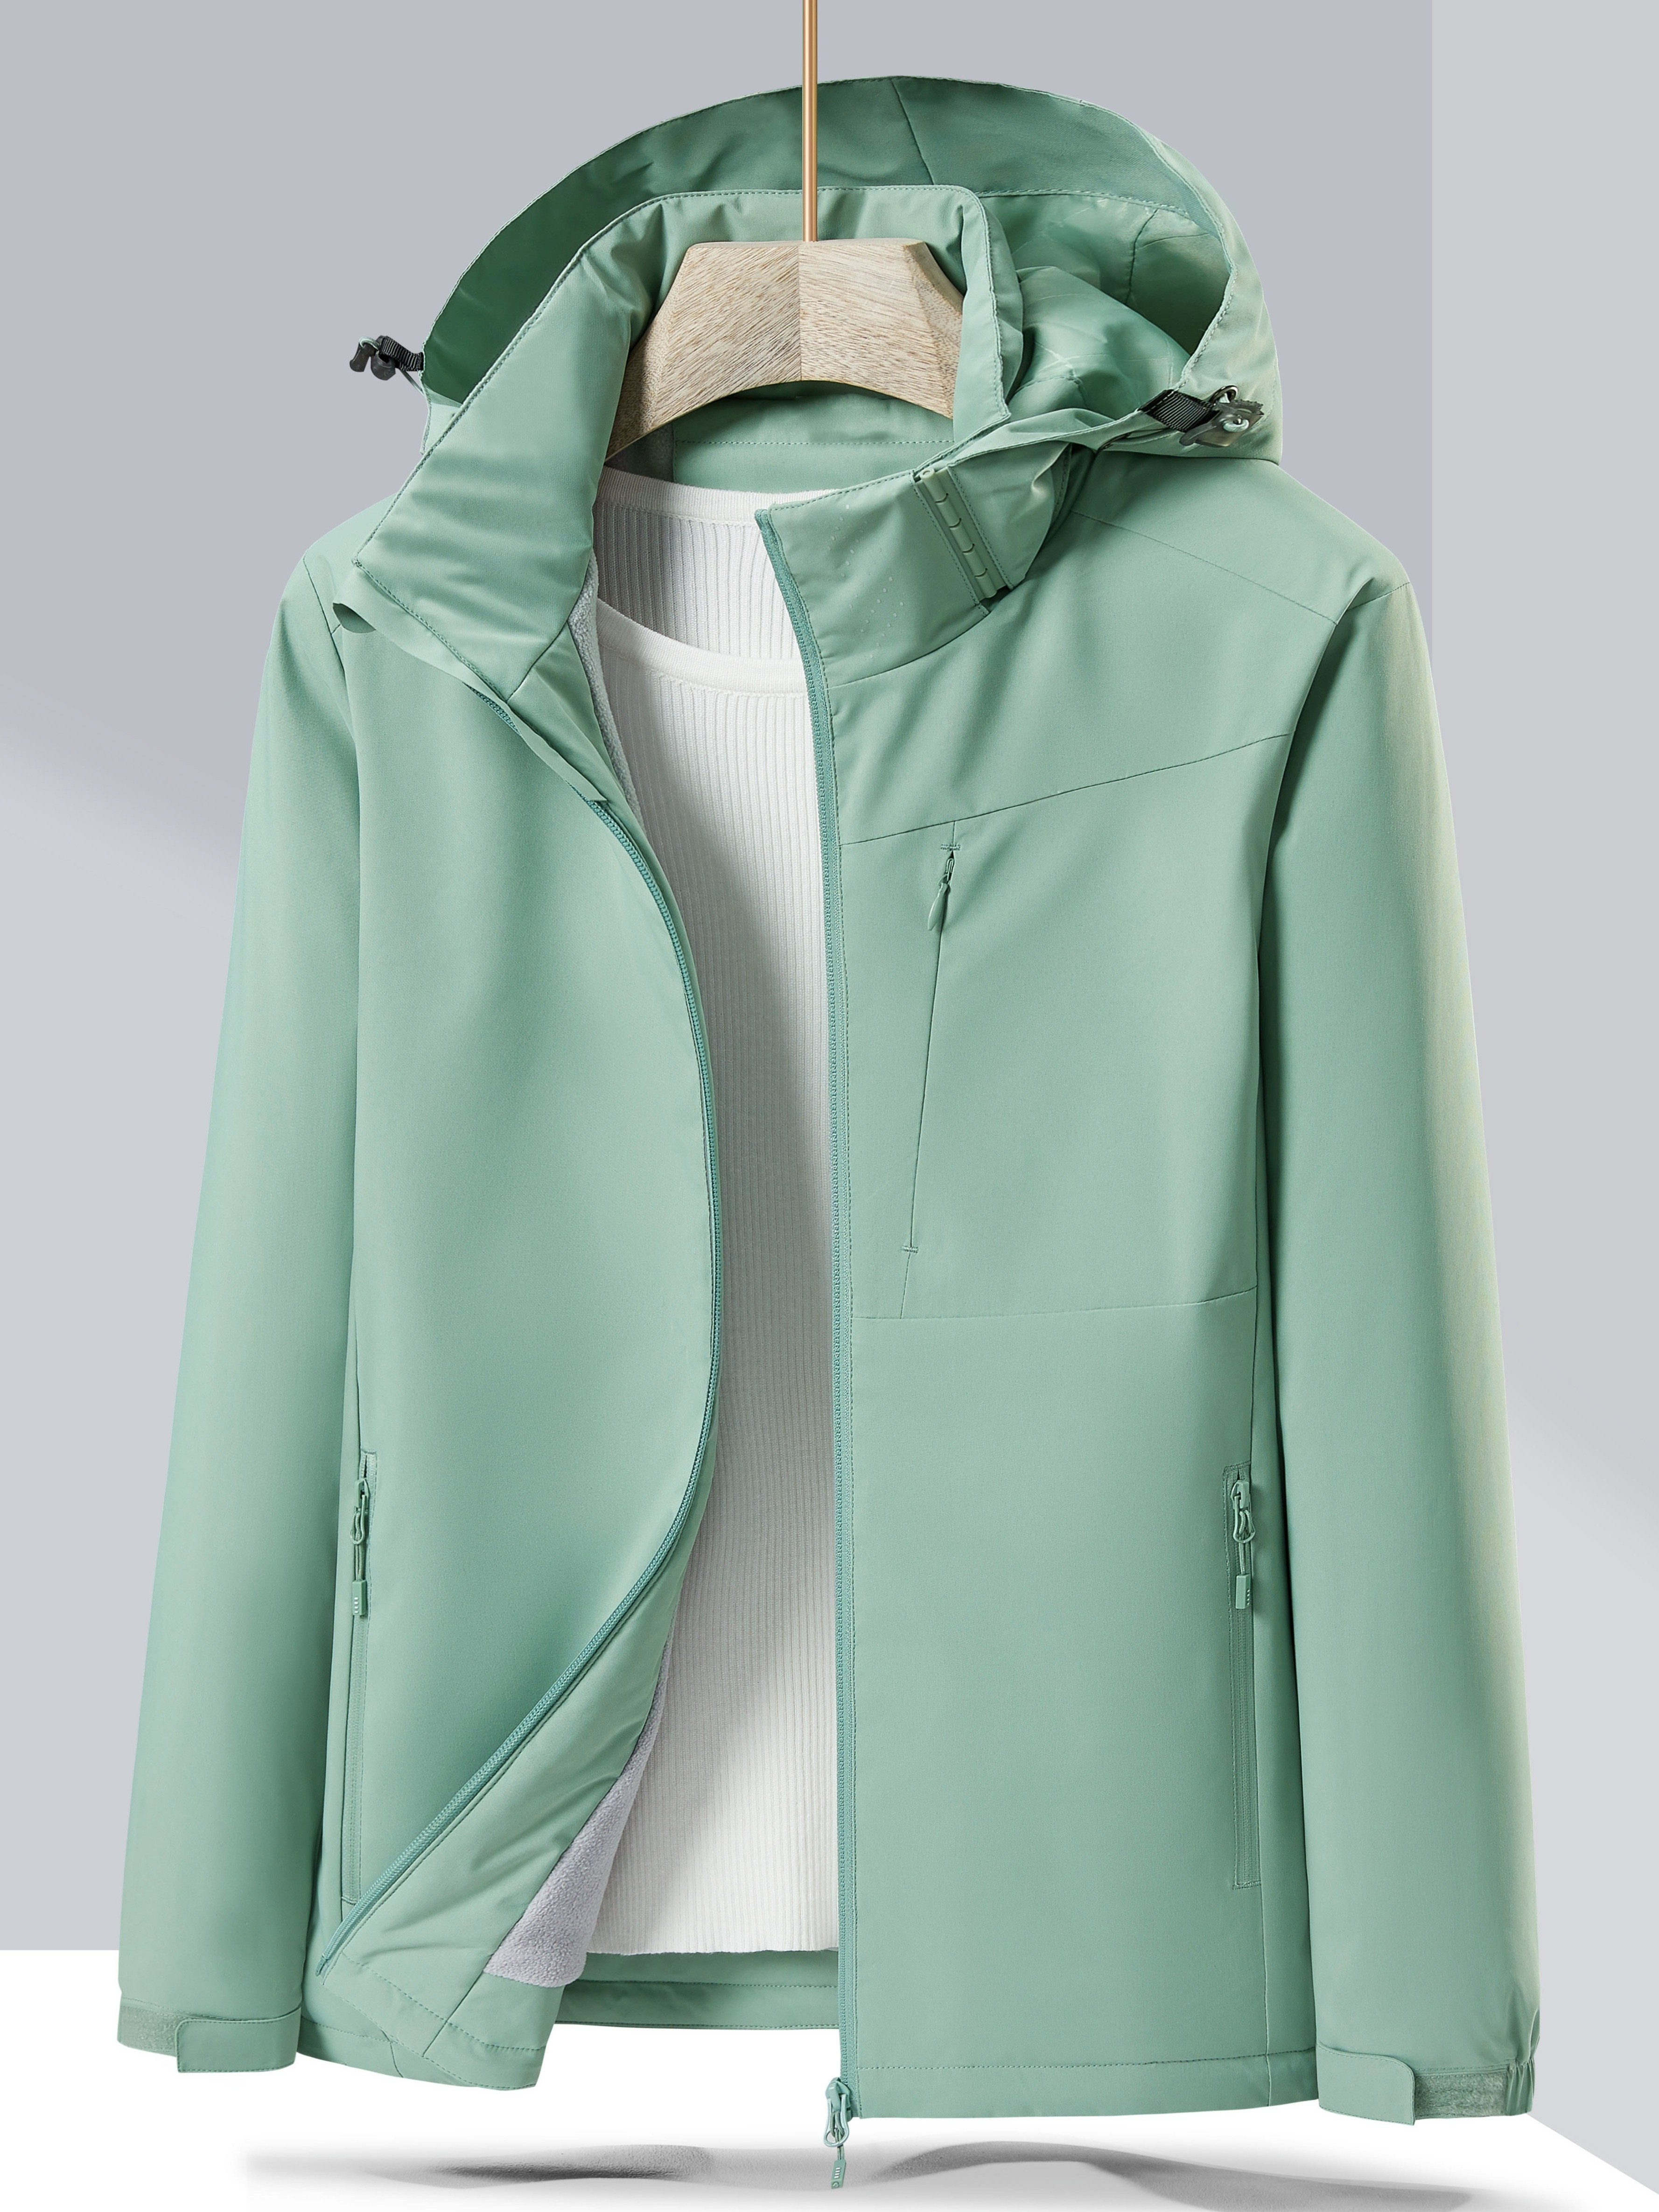 Ladies Waterproof Fleece Lined Jackets From £179